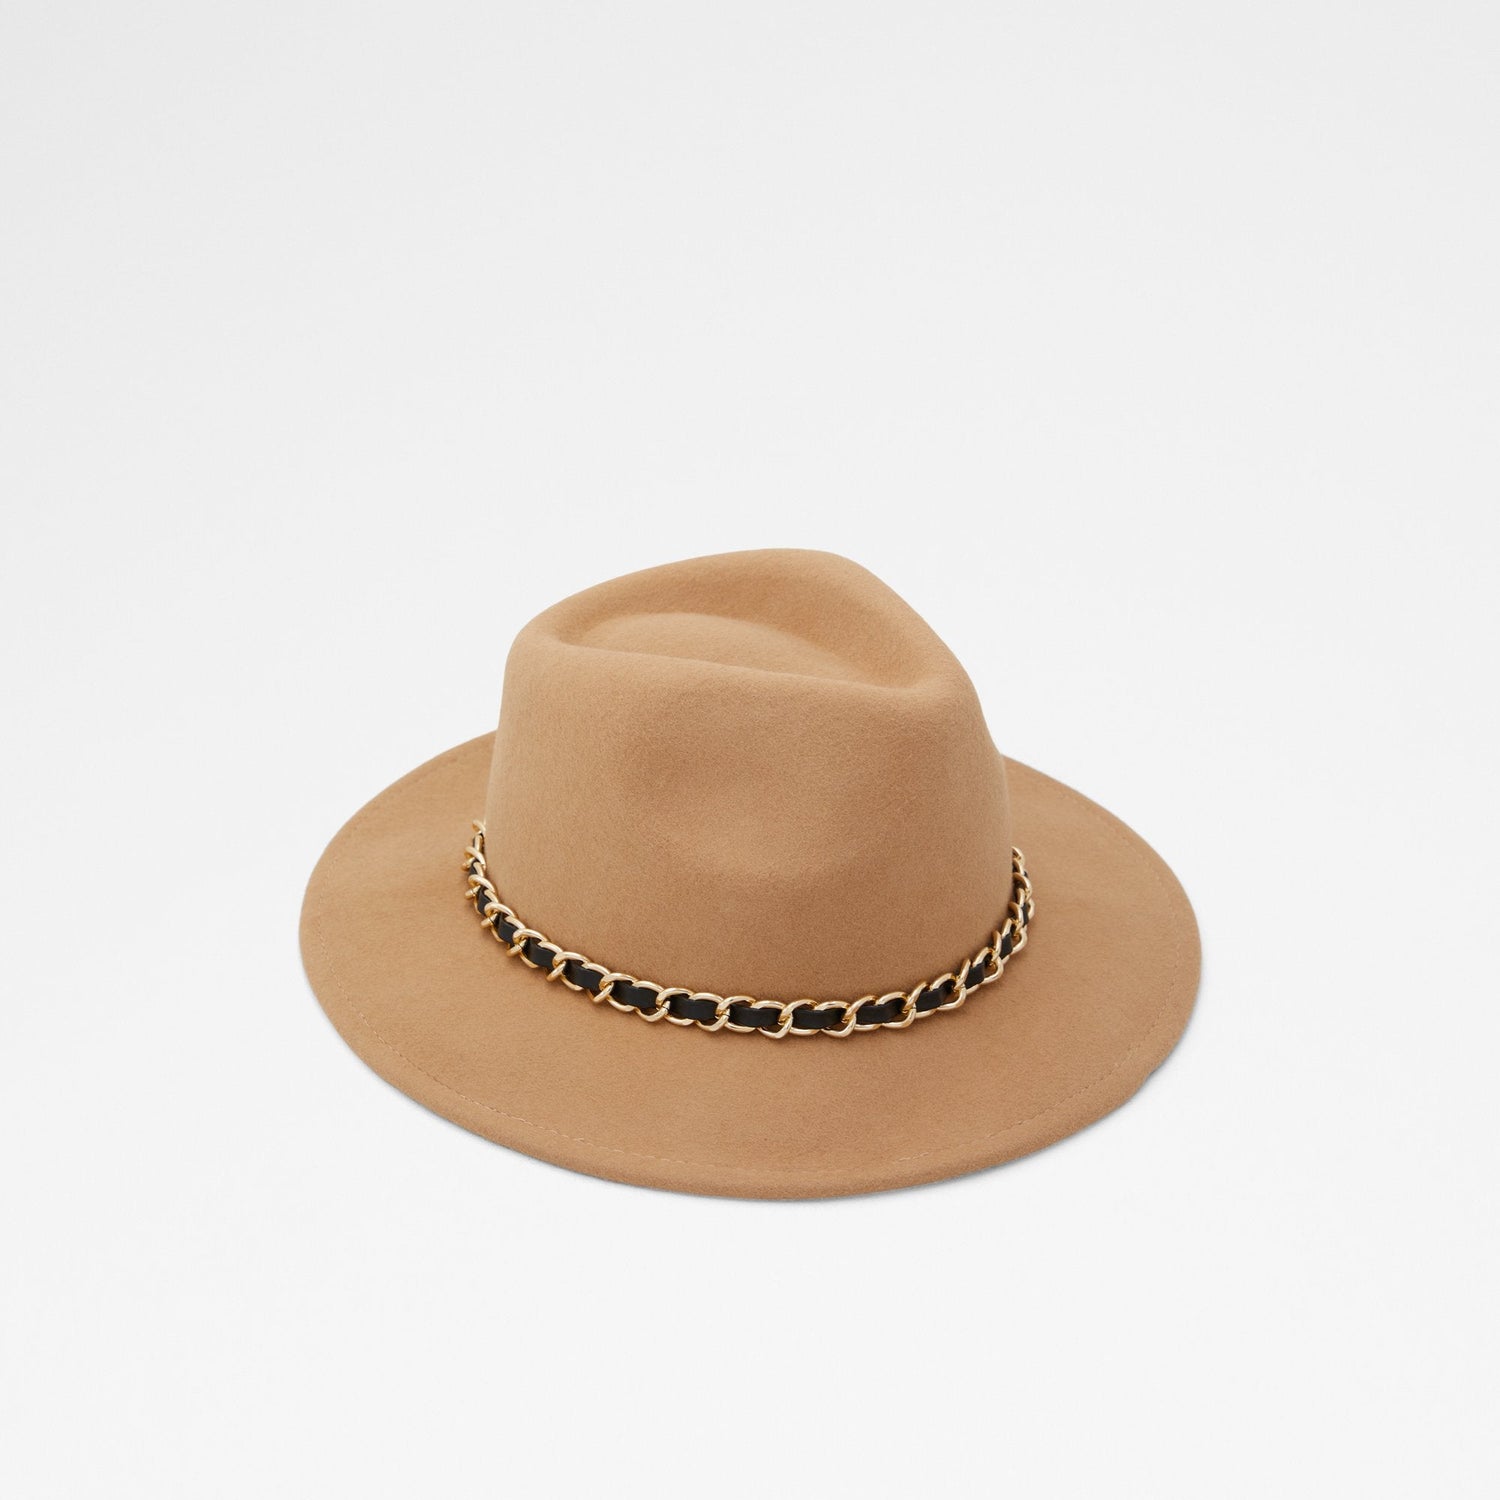 Wesley Fedora Hat